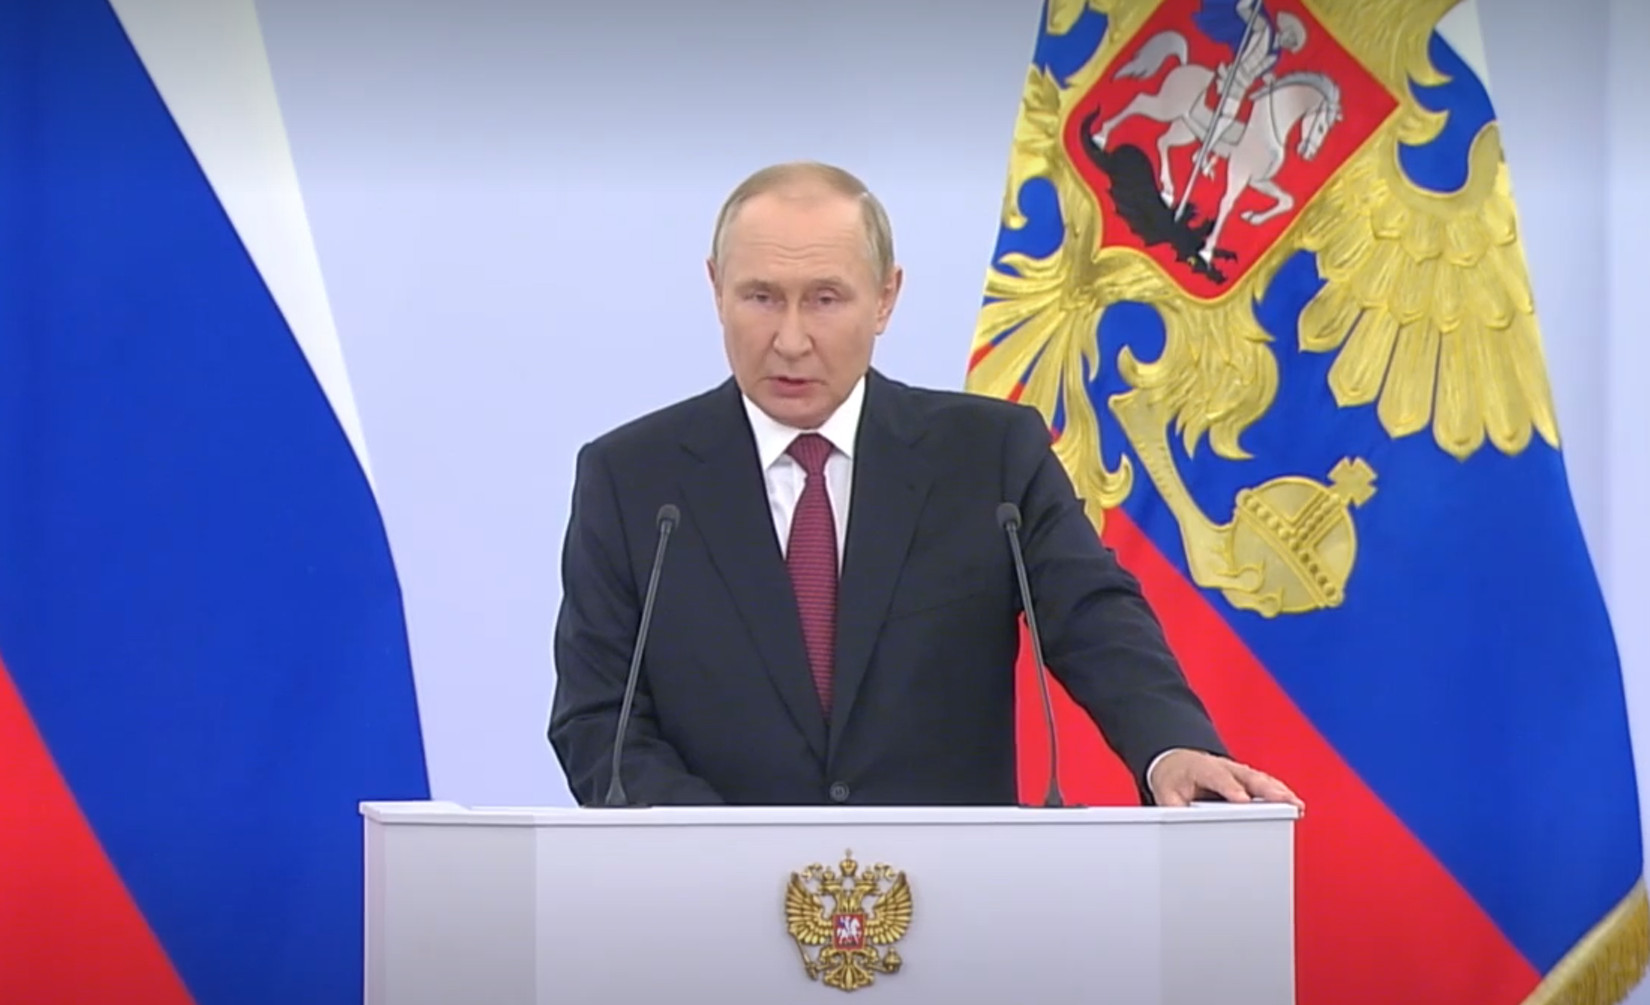 „RUSIJA JE DOBILA ČETIRI NOVE REGIJE“Aneksija uživo: Putin zvanično proglašava pripajanje ukrajinskih teritorija